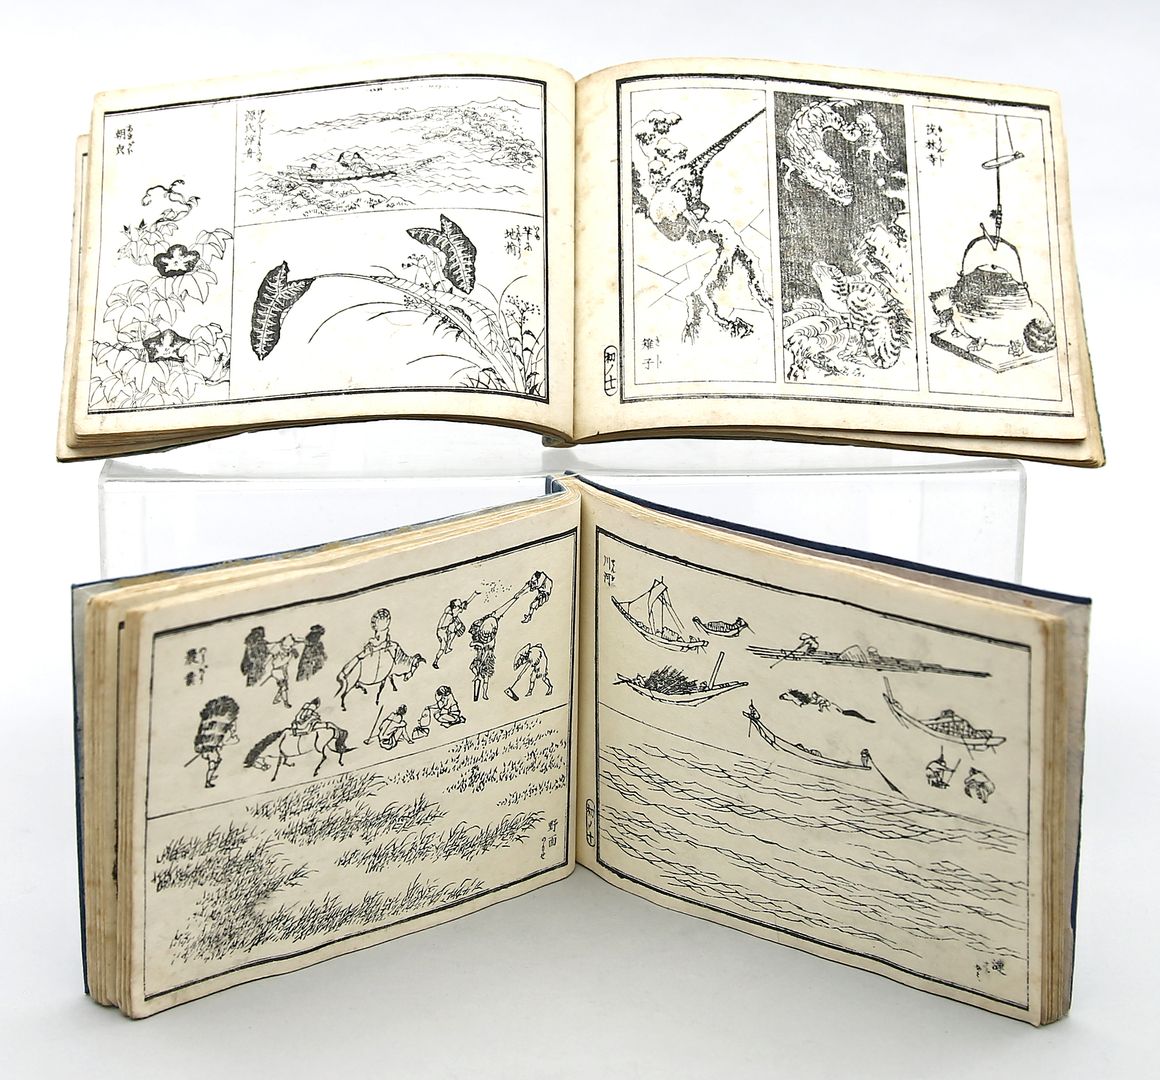 Zwei Alben mit Holzschnitten von Hokusai.